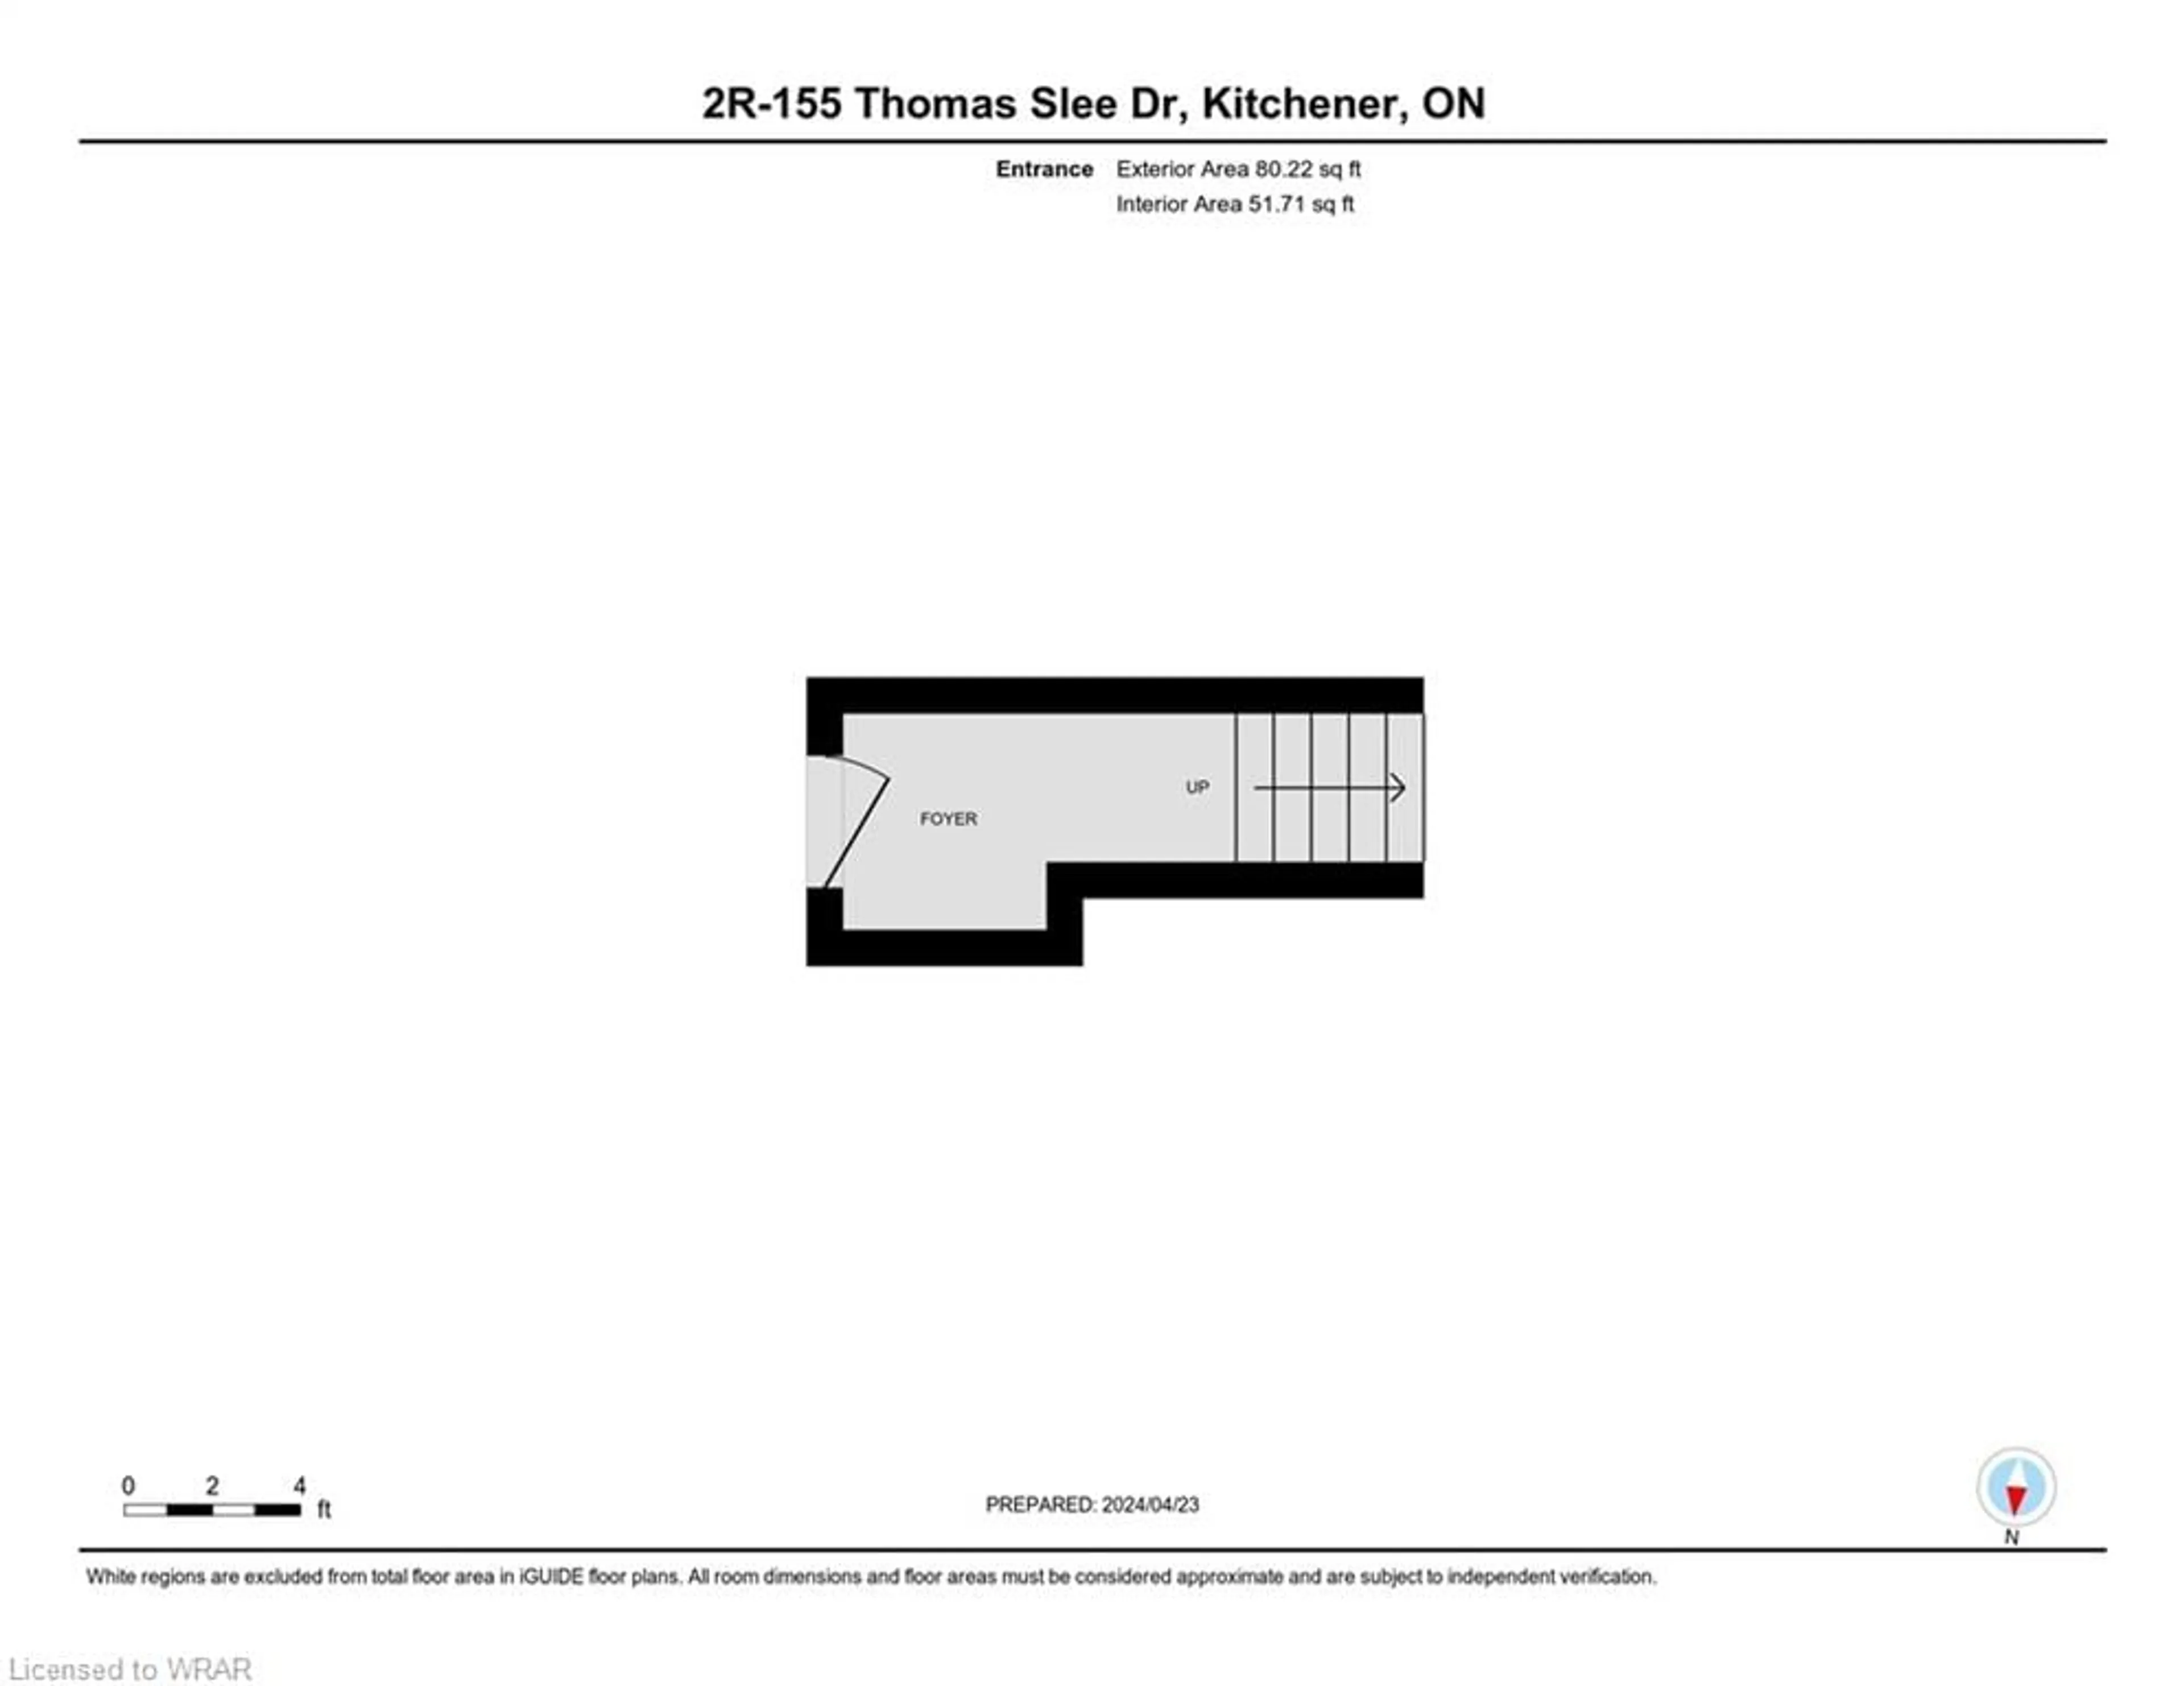 Floor plan for 155 Thomas Slee Dr #2R, Kitchener Ontario N2P 0J8